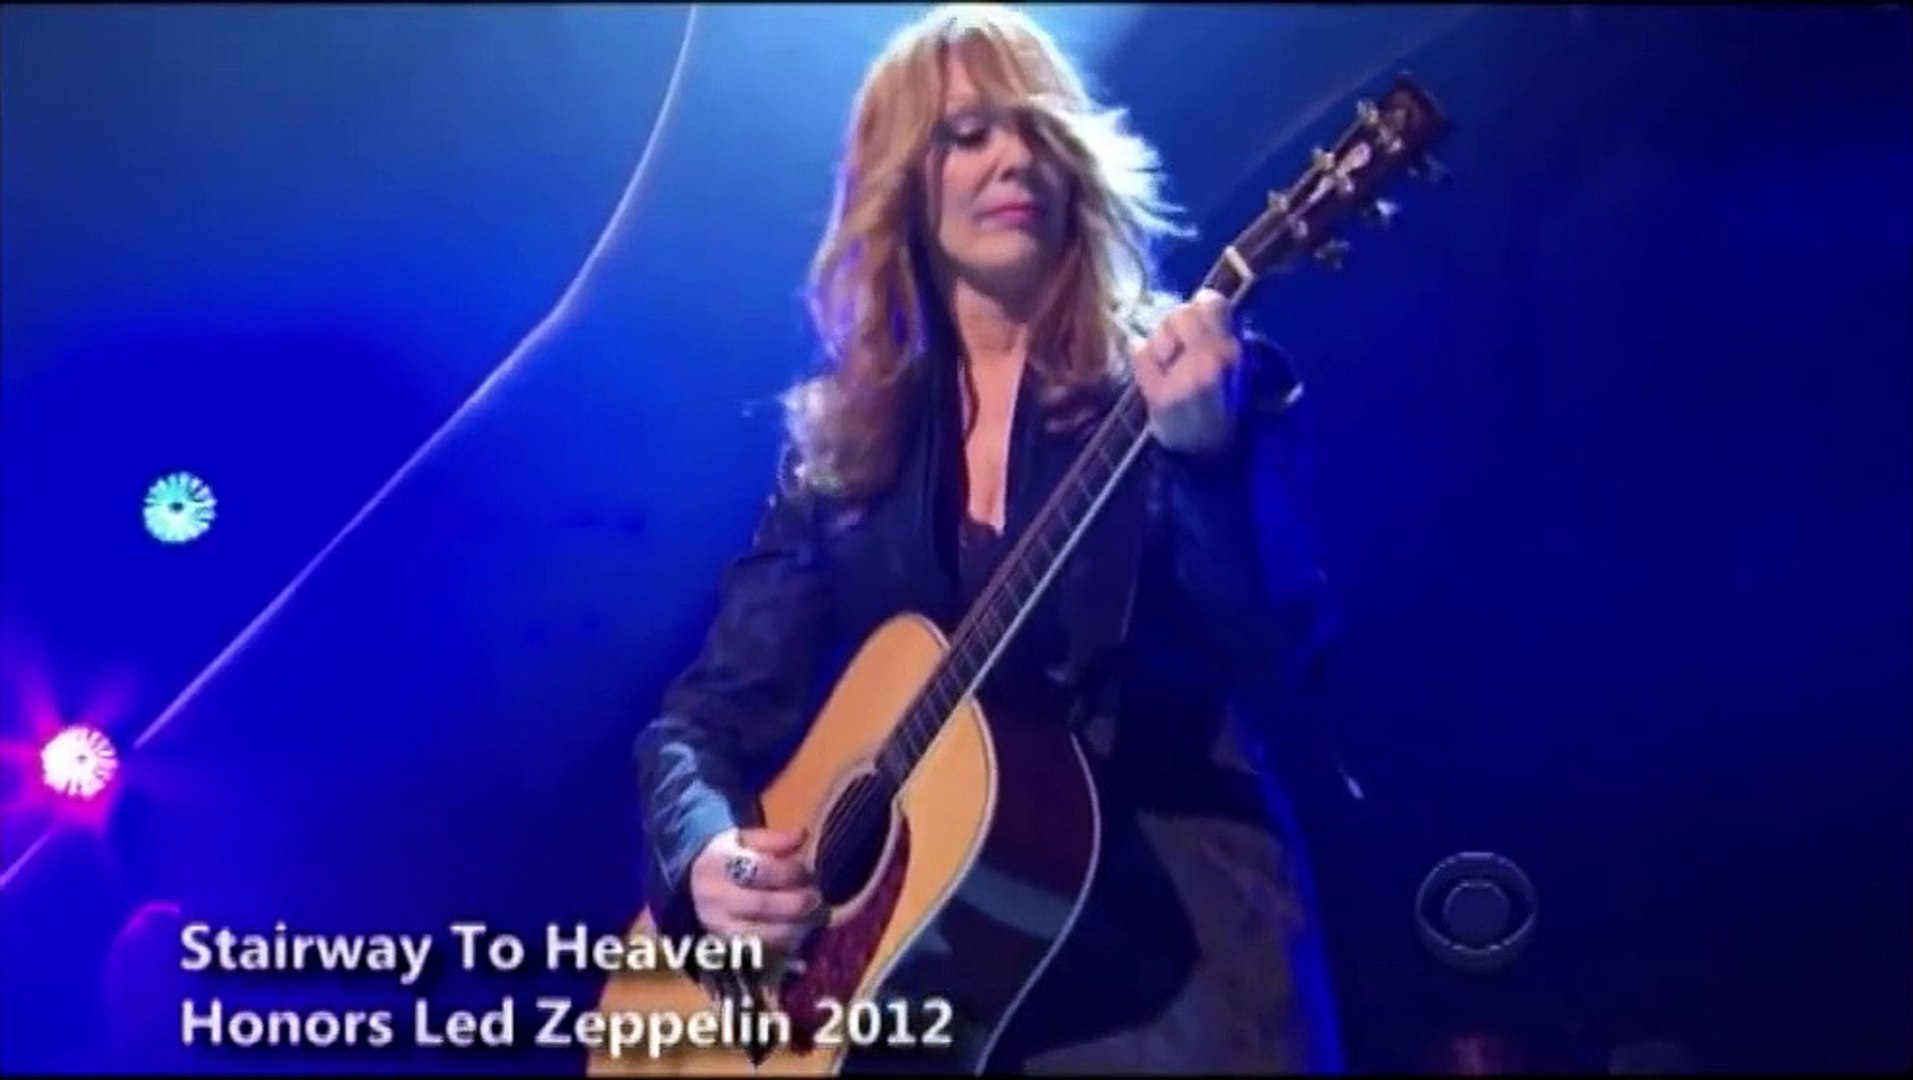 Honors Led Zeppelin 2012 - Escalera al cielo (subtitulado en español) -  Vídeo Dailymotion